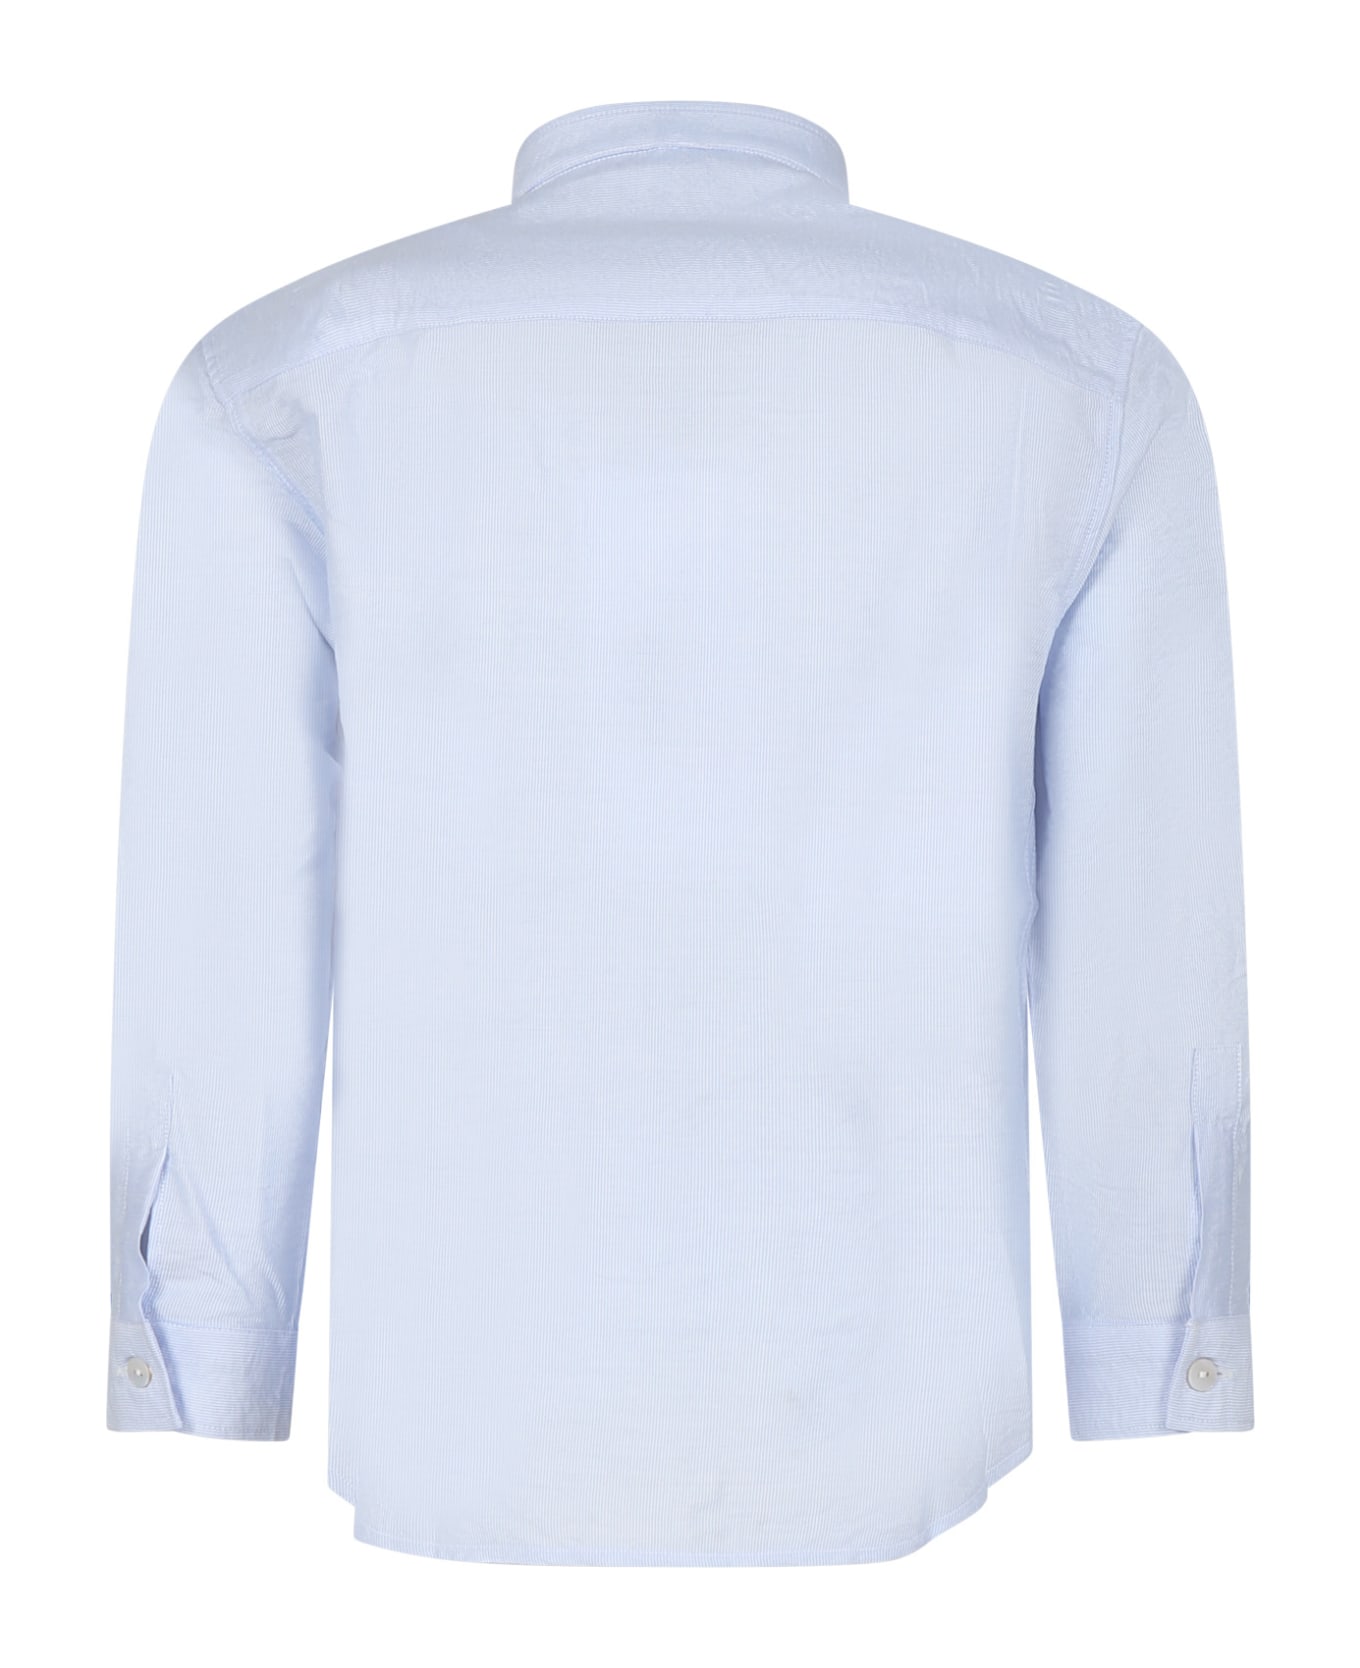 Dondup Light Blue Shirt For Boy With Logo - Light Blue